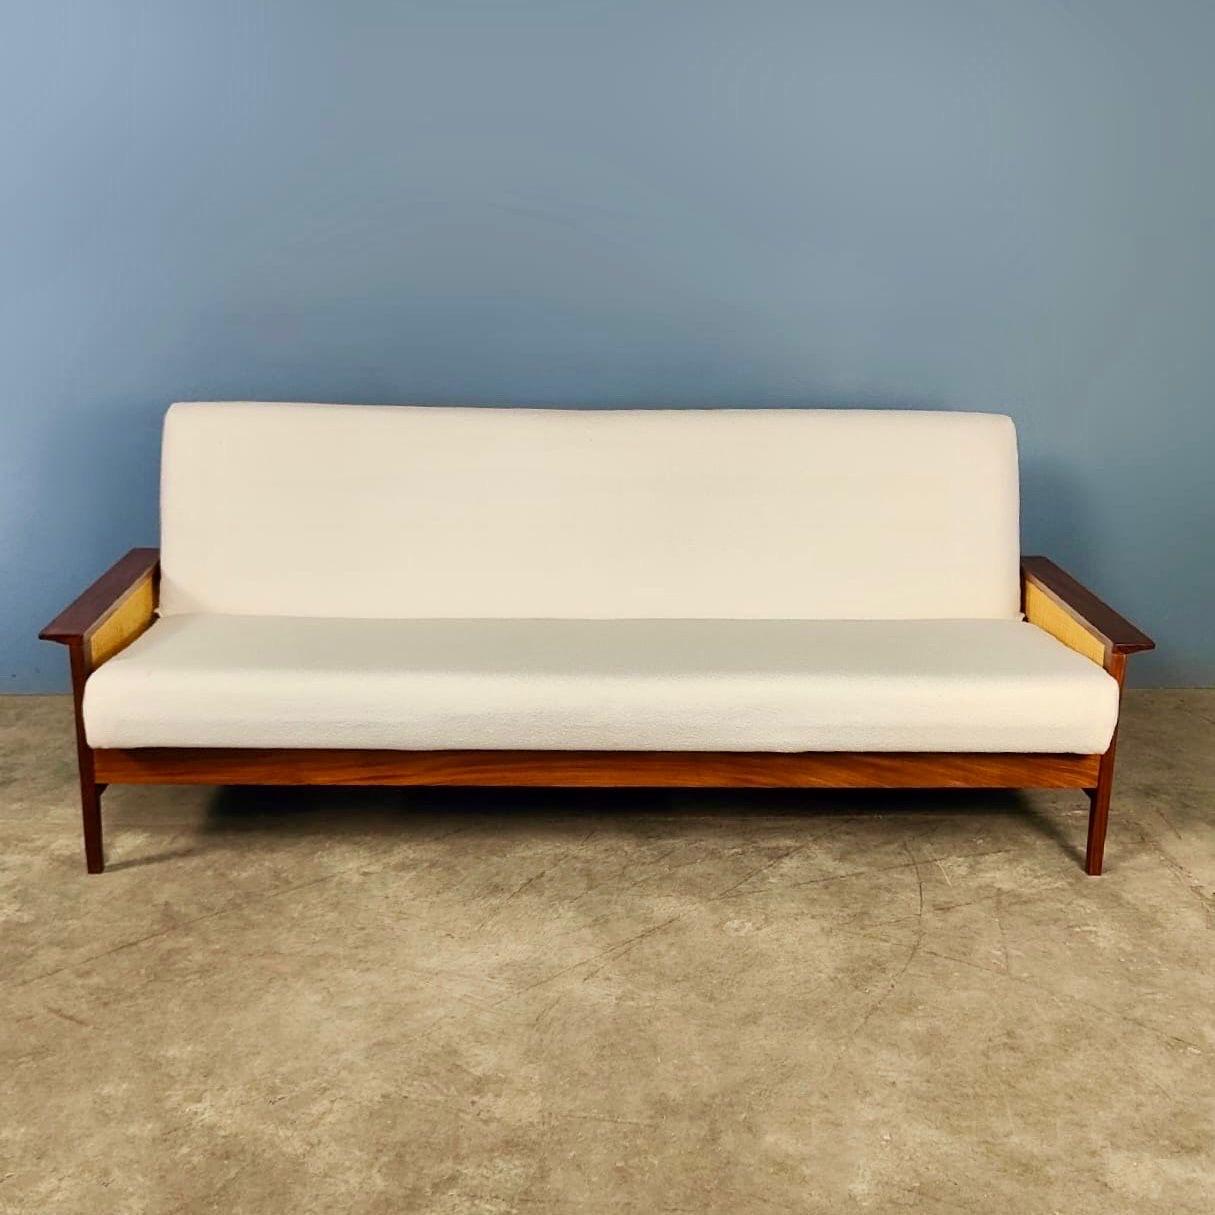 Nouveau stock ✅

1960s G-Plan Group 3 Three Seater Sofa Bed Design by Richard Young of Merrow Associates

Produit par G-Plan et conçu par Richard Young au début des années 1960, ce magnifique canapé trois places très pratique se replie pour devenir